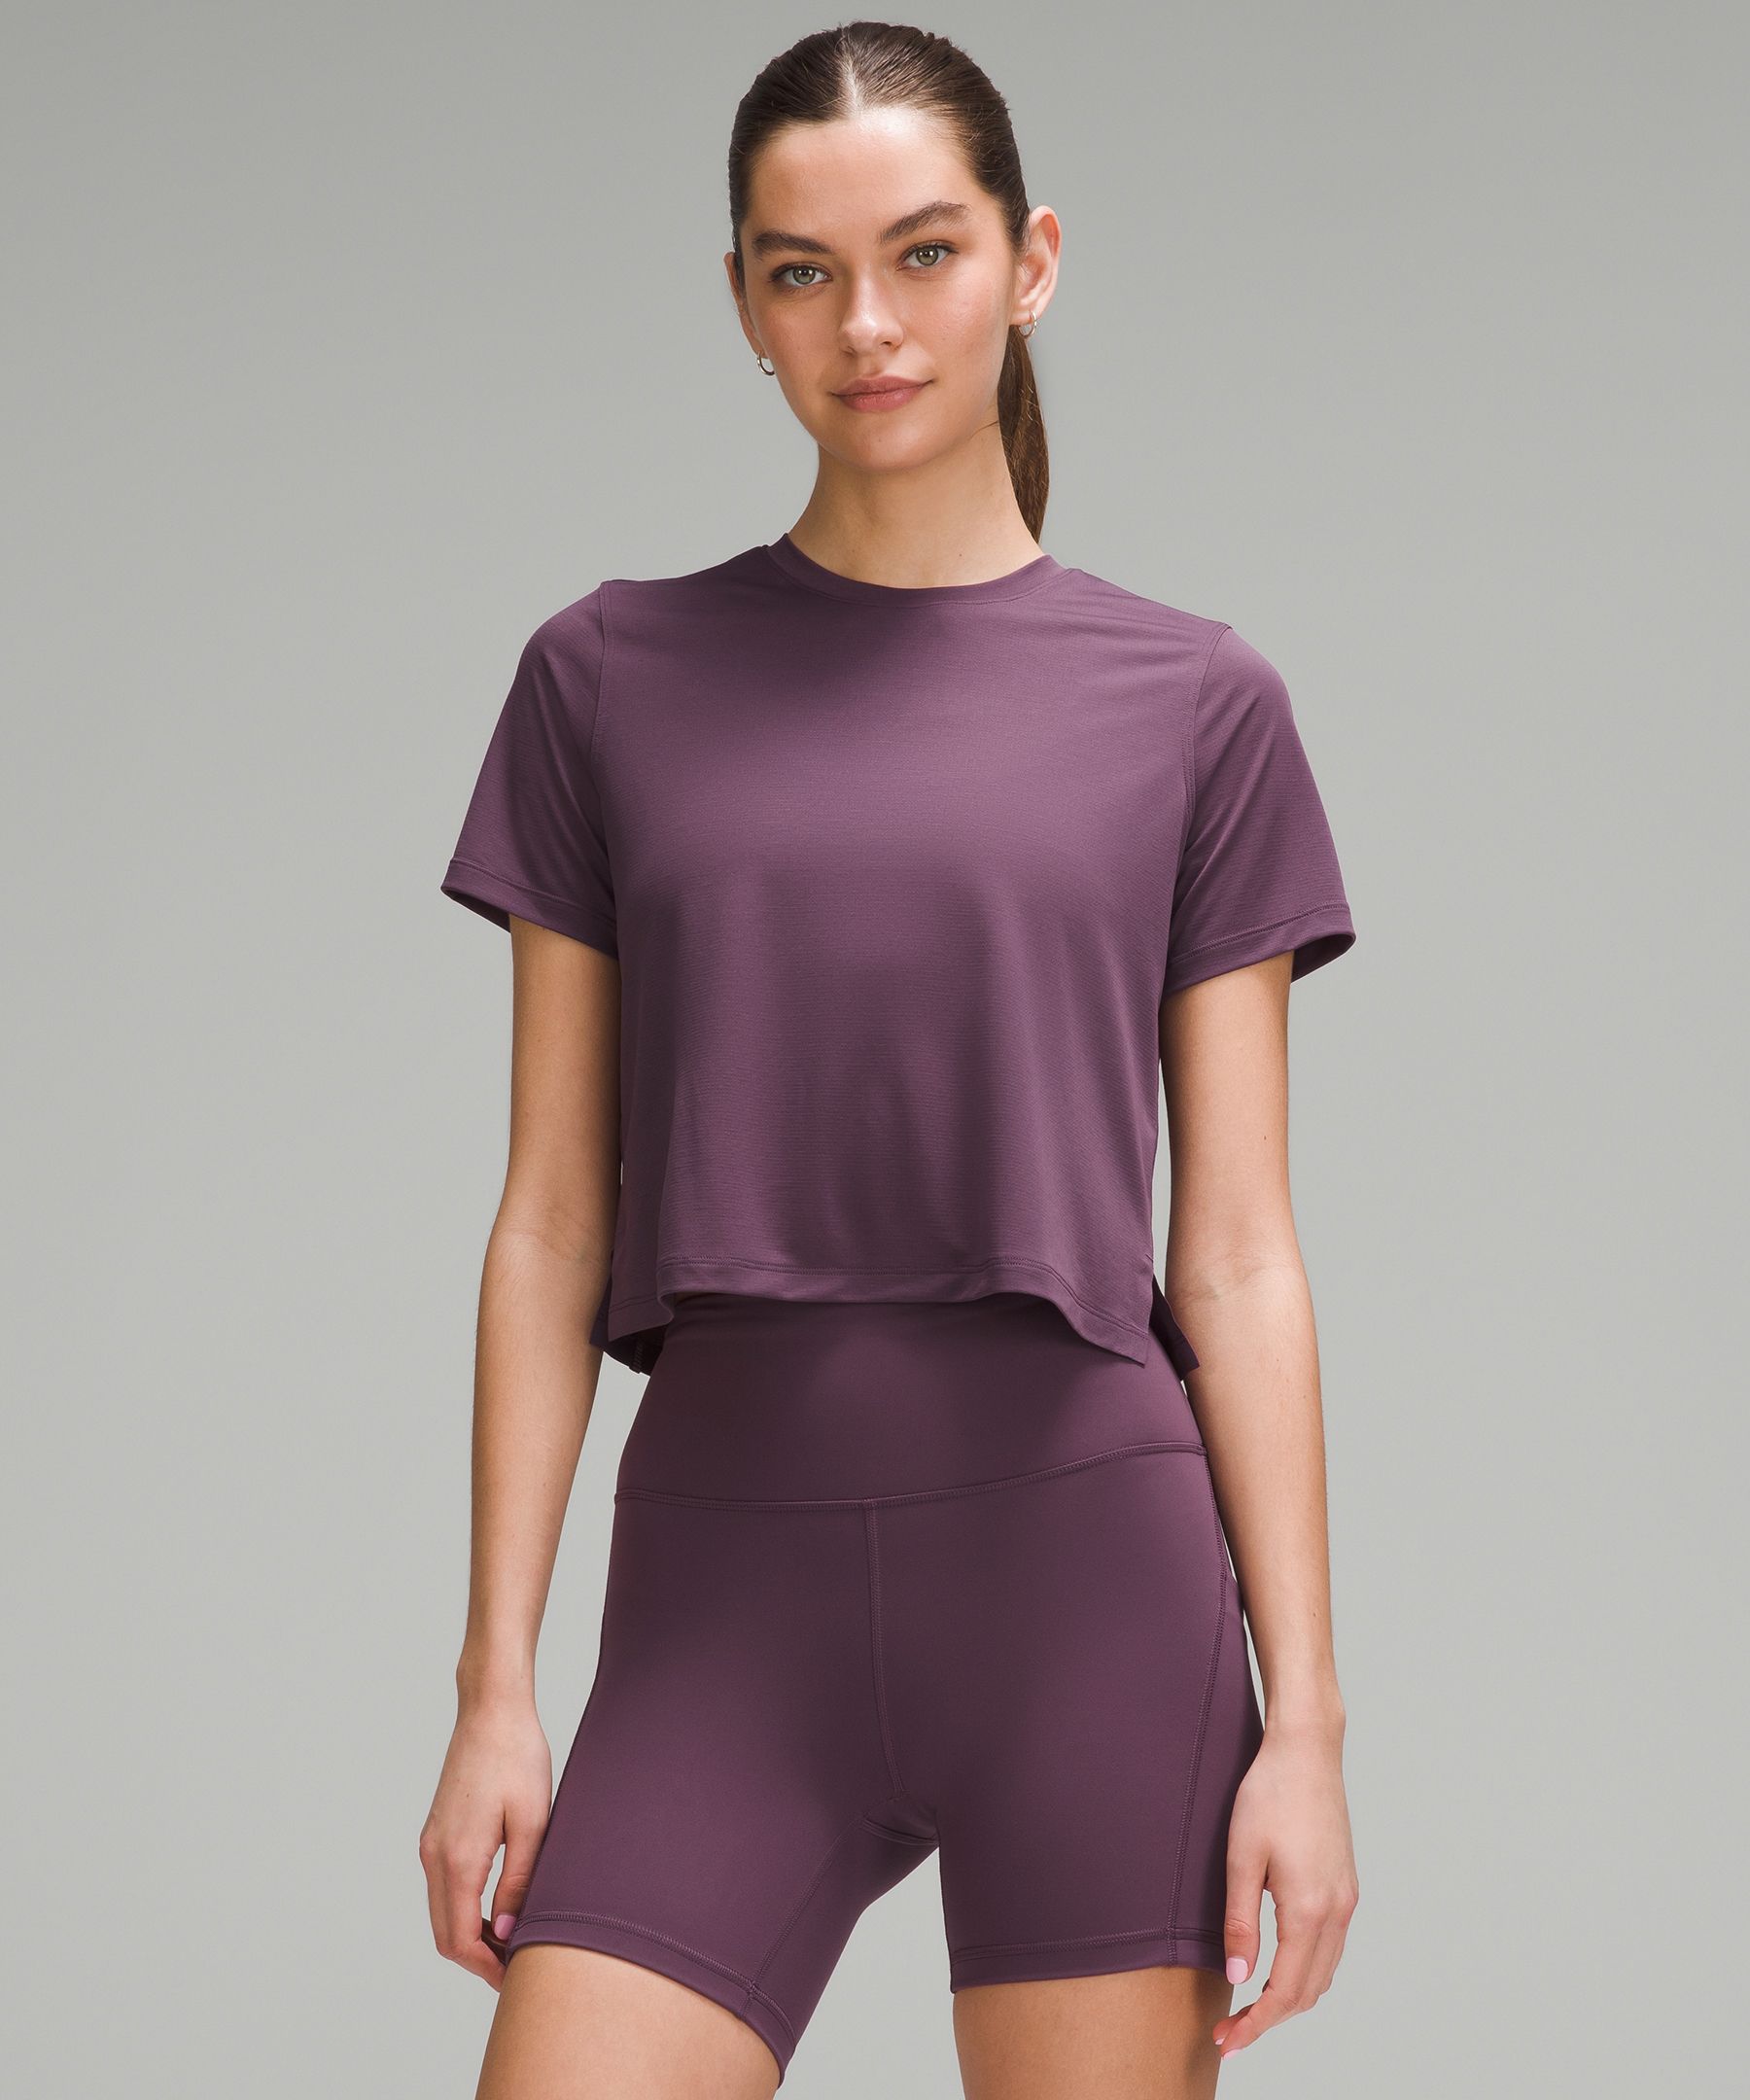 Ultralight Waist-Length T-Shirt, Women's Short Sleeve Shirts & Tee's